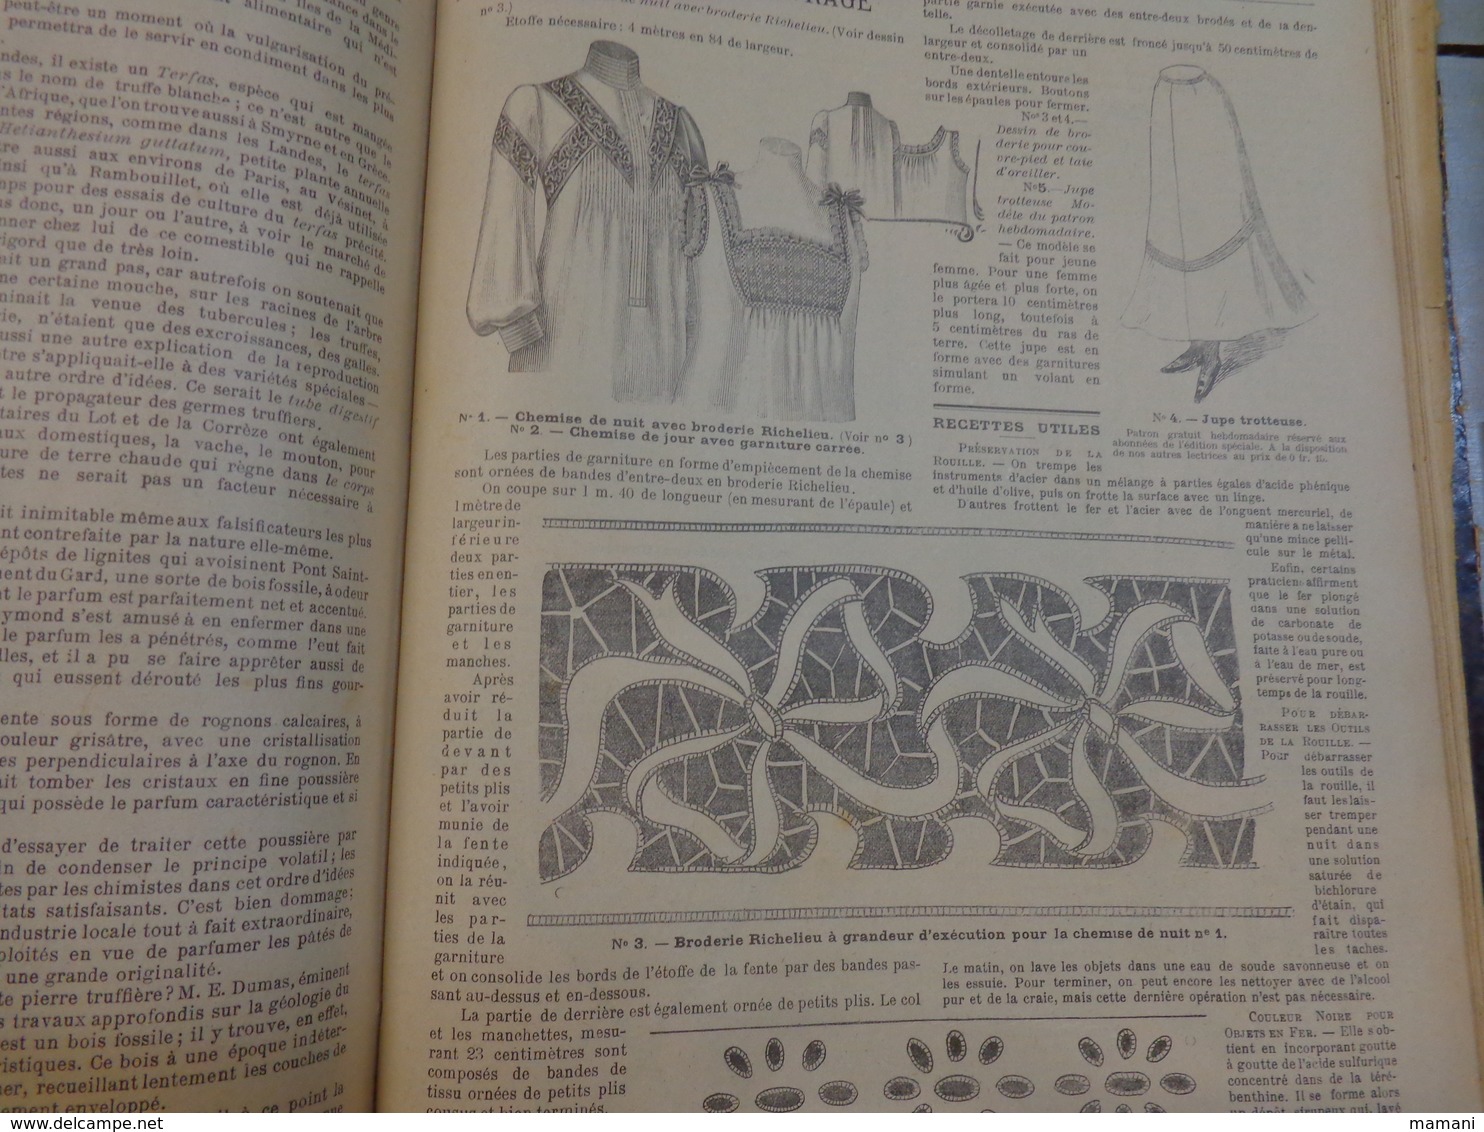 Reliure du journal "LA FAMILLE" pour l’année 1902 / Belles Gravures de Mode de Broderies et Illustrations